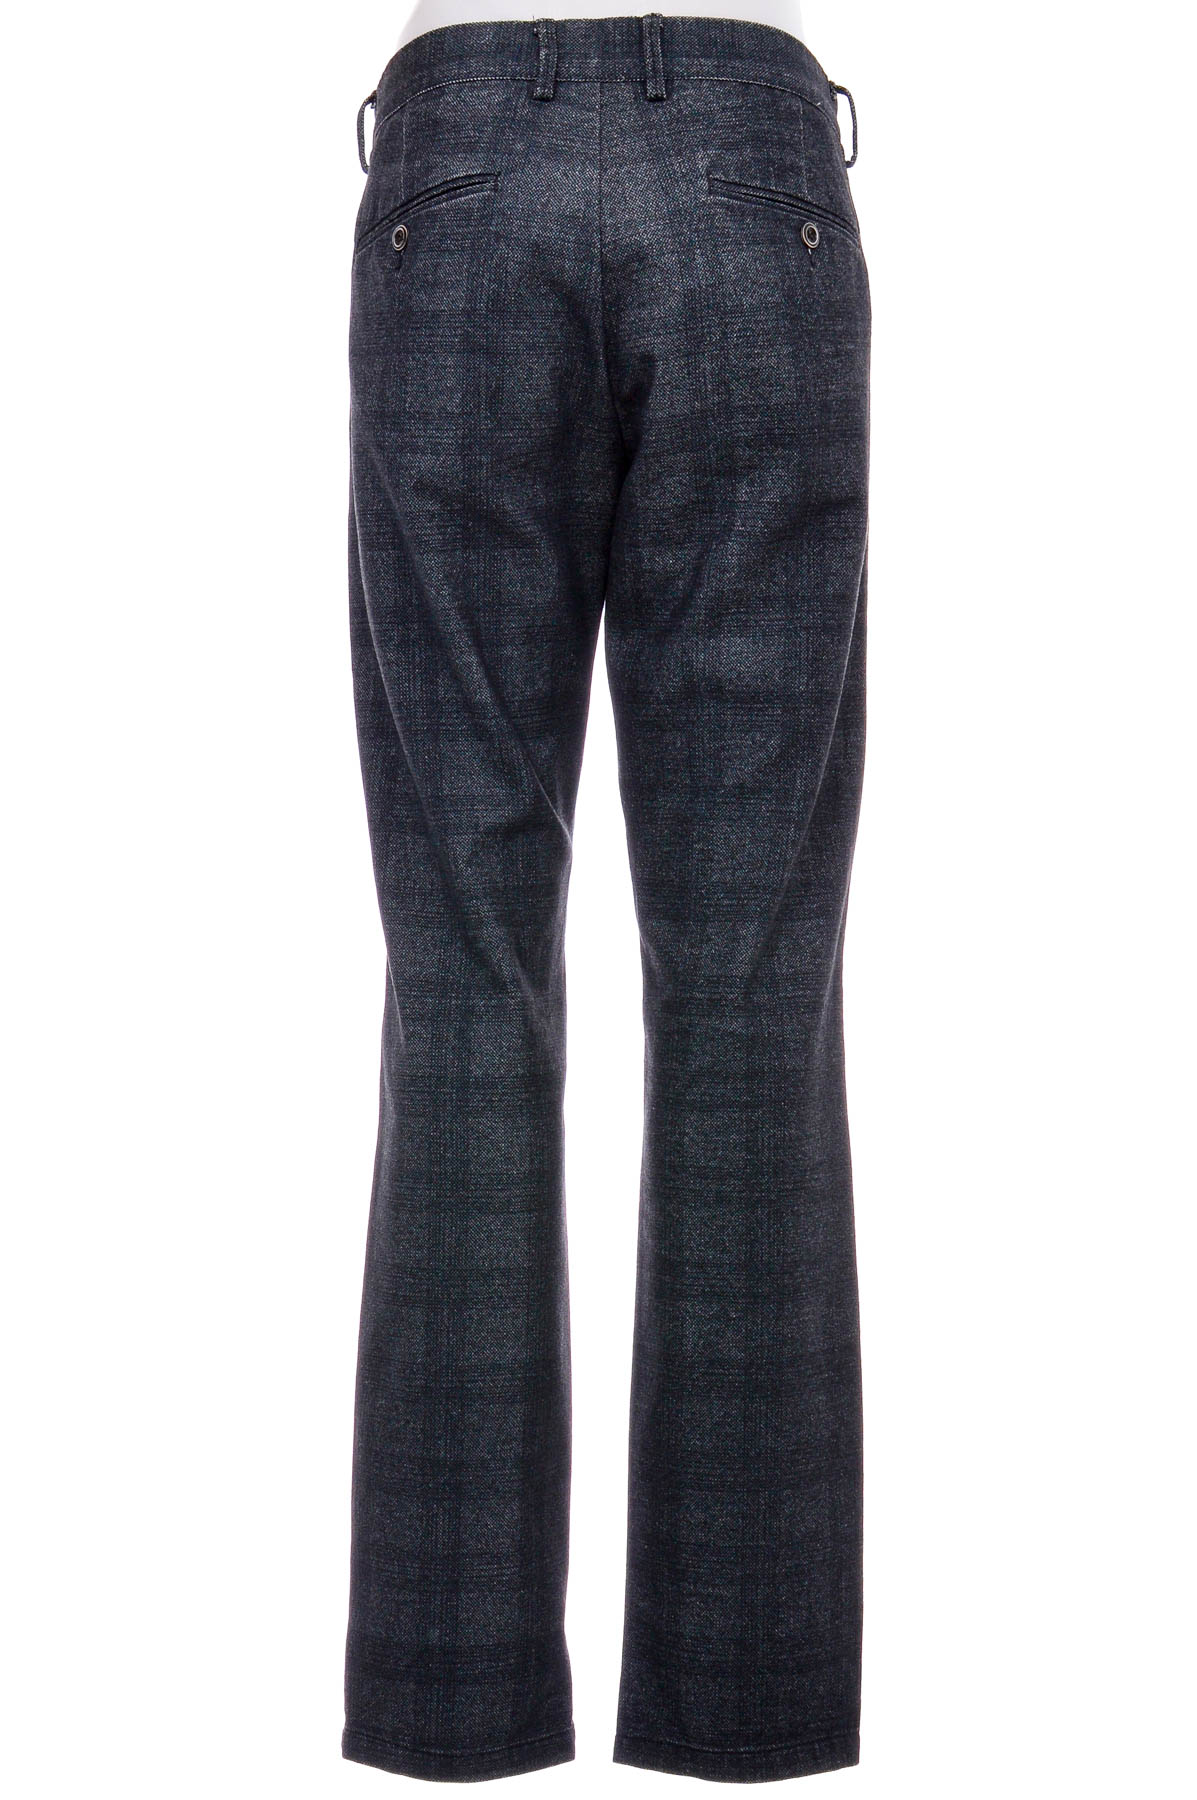 Men's trousers - DEVRED 1902 - 1